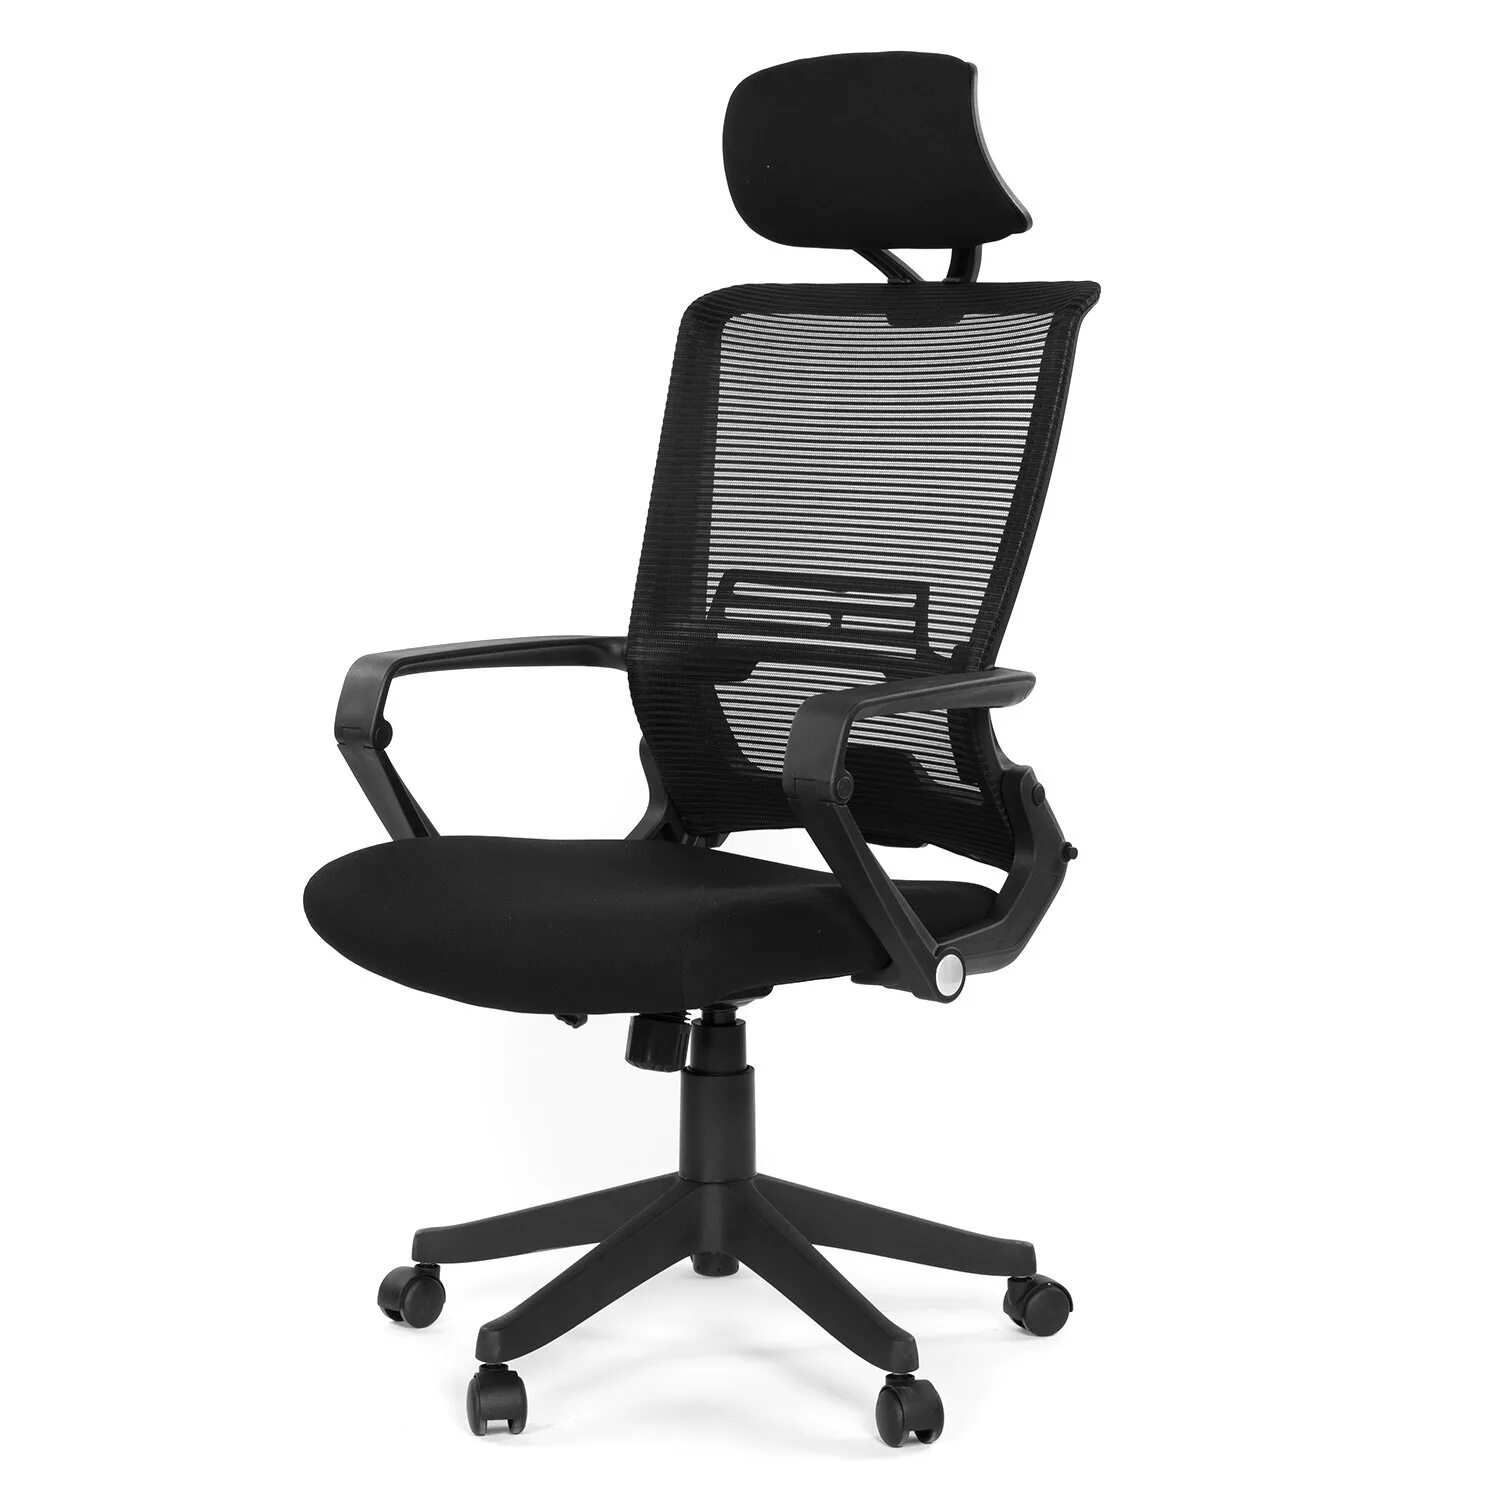 Кресло AG Grid Office Chair lb. Кресло HLC 1500. Кресло эргономичное defo с подголовником. Ergonomic Dream кресло офисное.